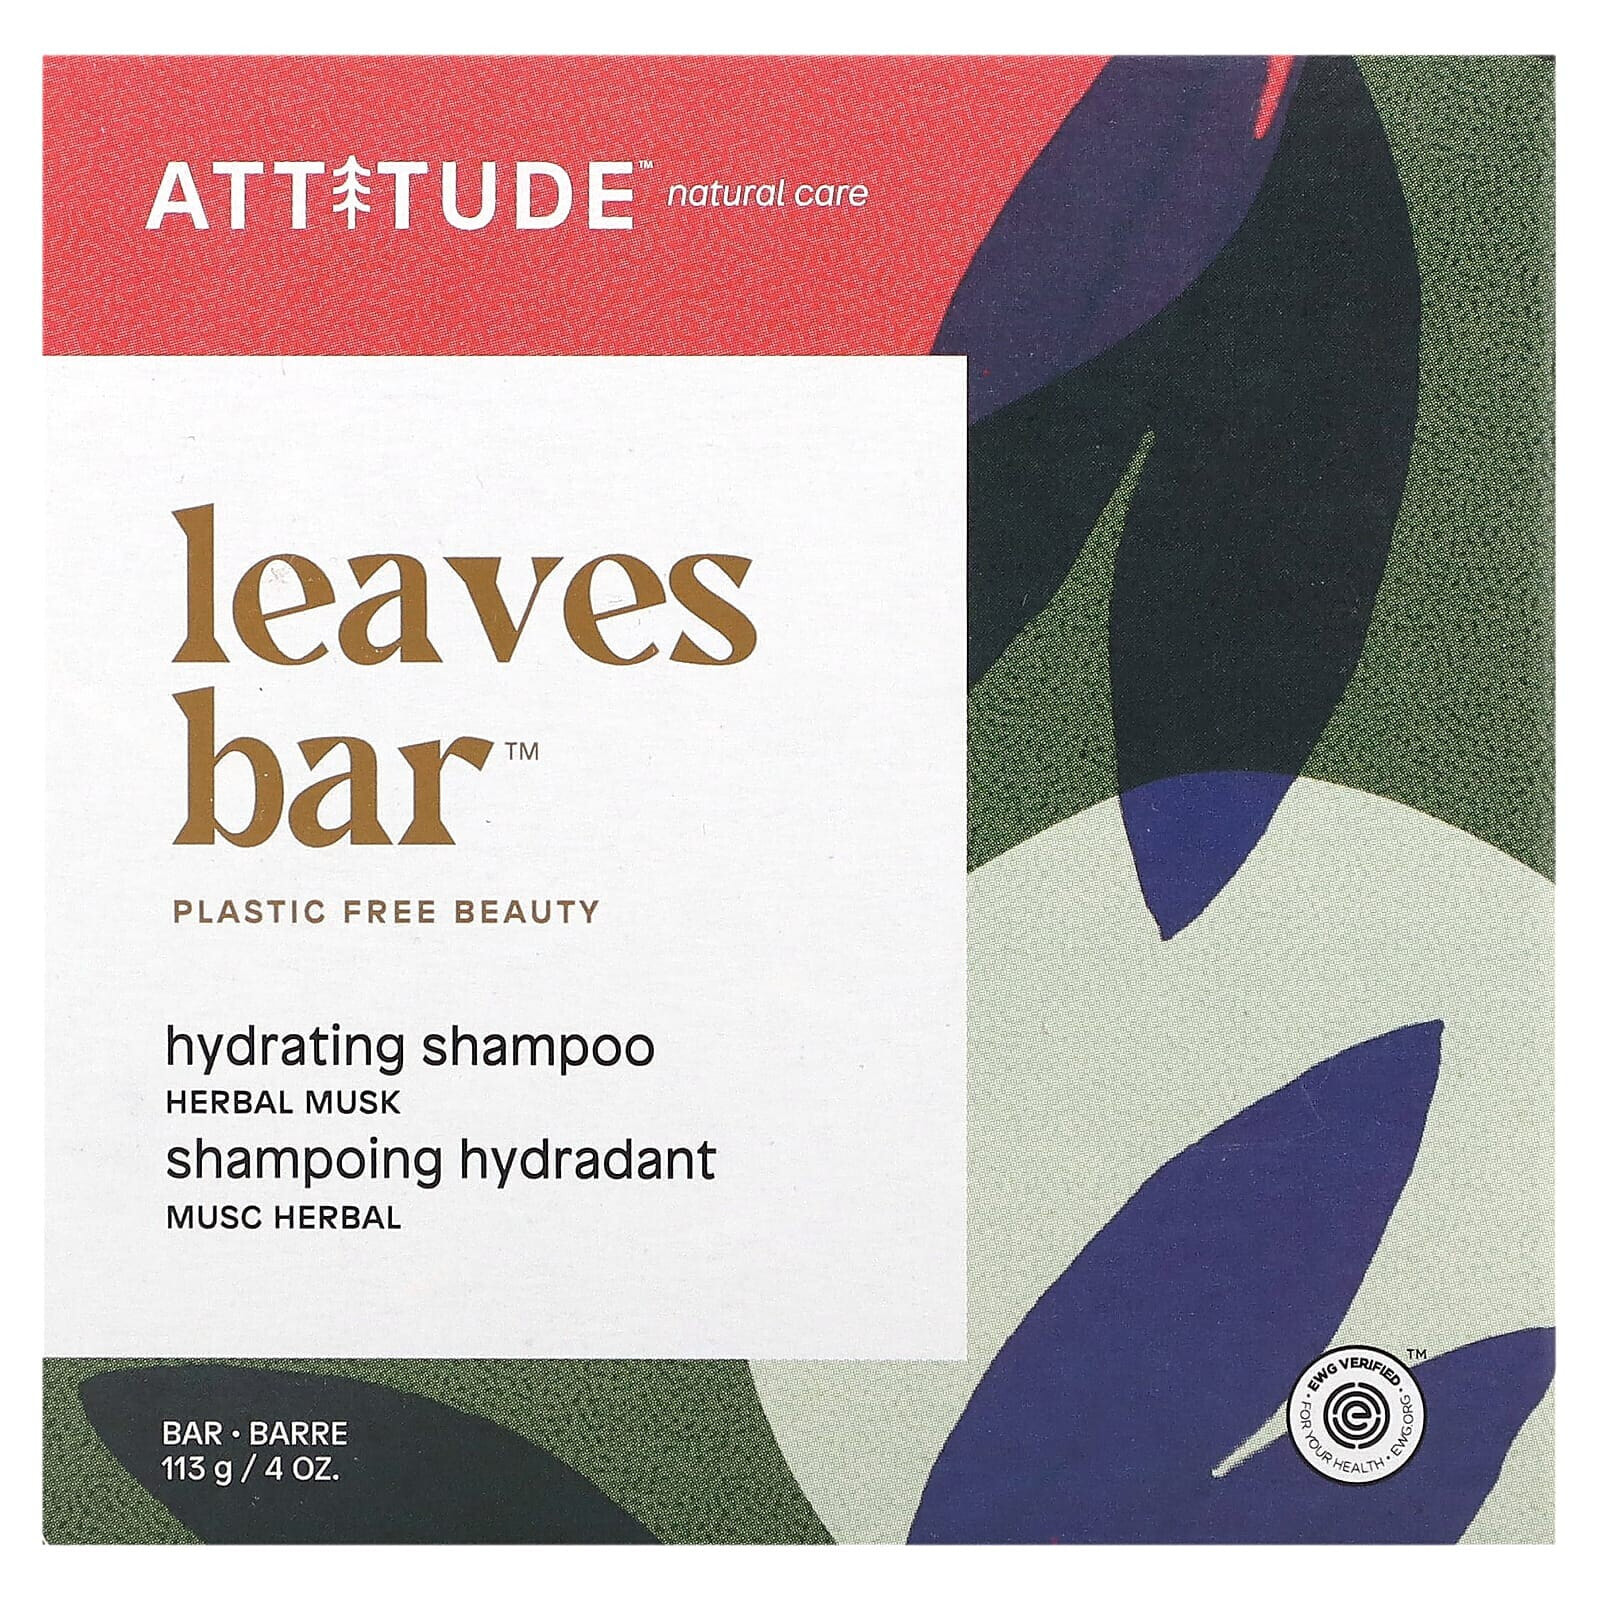 ATTITUDE, Leaves Bar, шампунь для увеличения объема, апельсиновый кардамон, 113 г (4 унции)